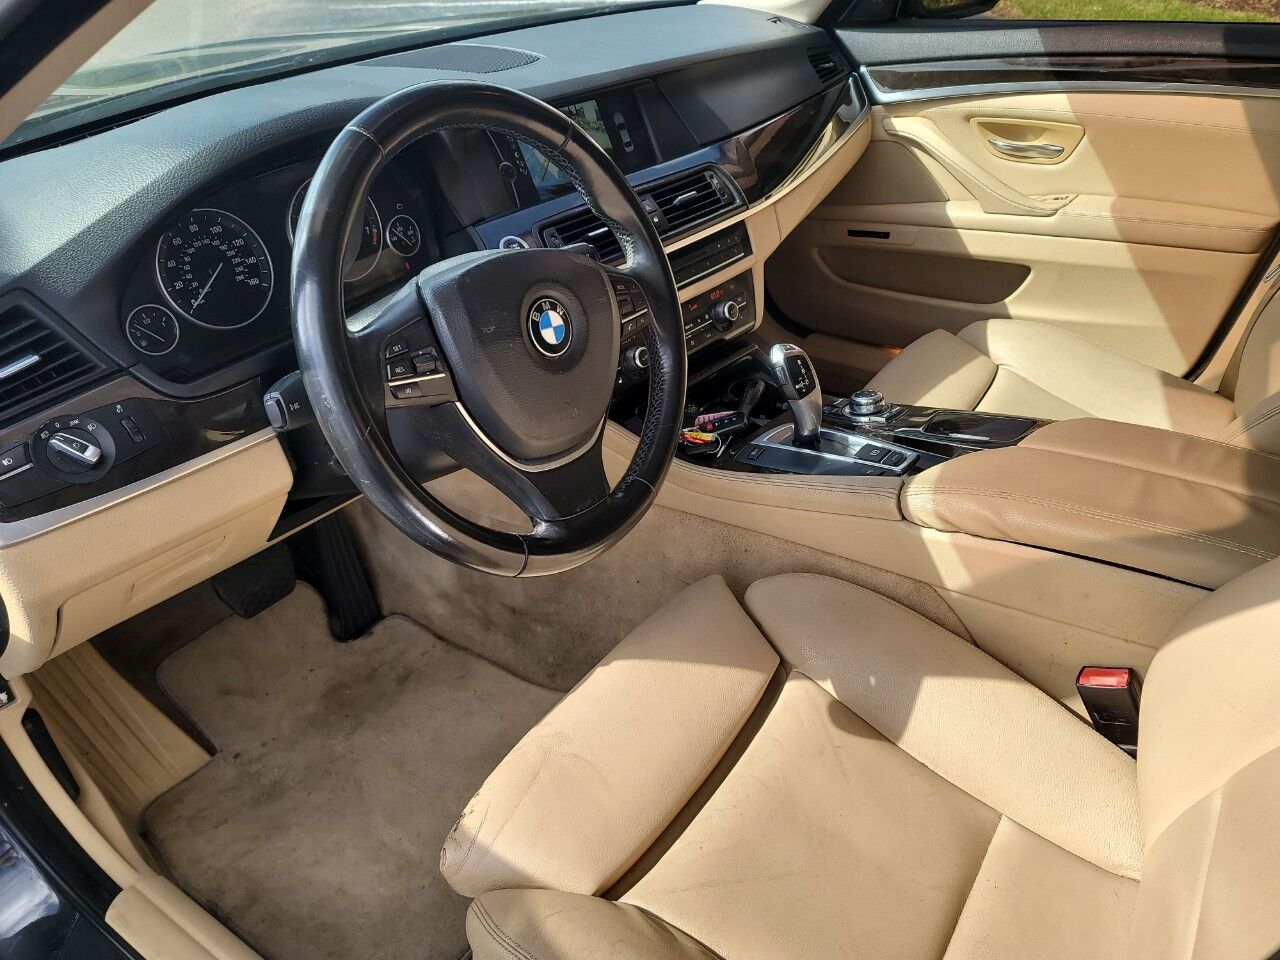 2011 BMW 535i Sedan - $9,900